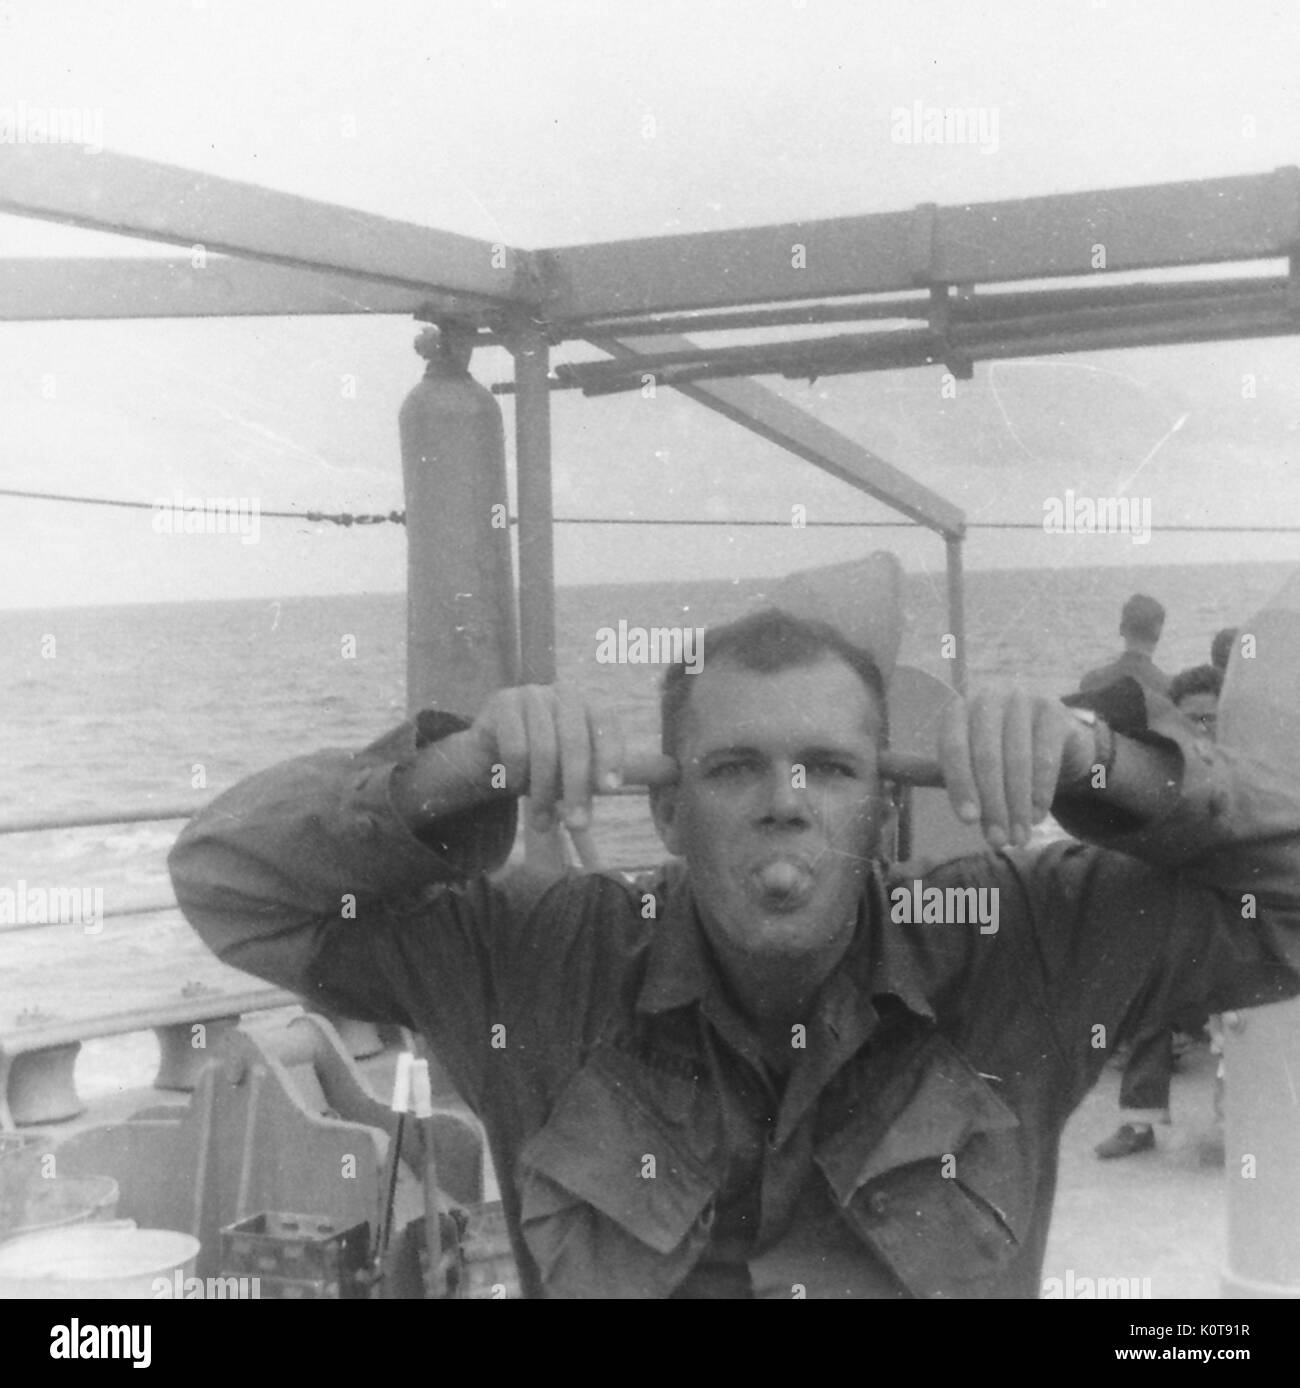 Gli Stati Uniti soldato gli blocca la lingua fuori e fa una faccia buffa mentre posa a bordo di una nave di grandi dimensioni, Vietnam, 1966. Foto Stock